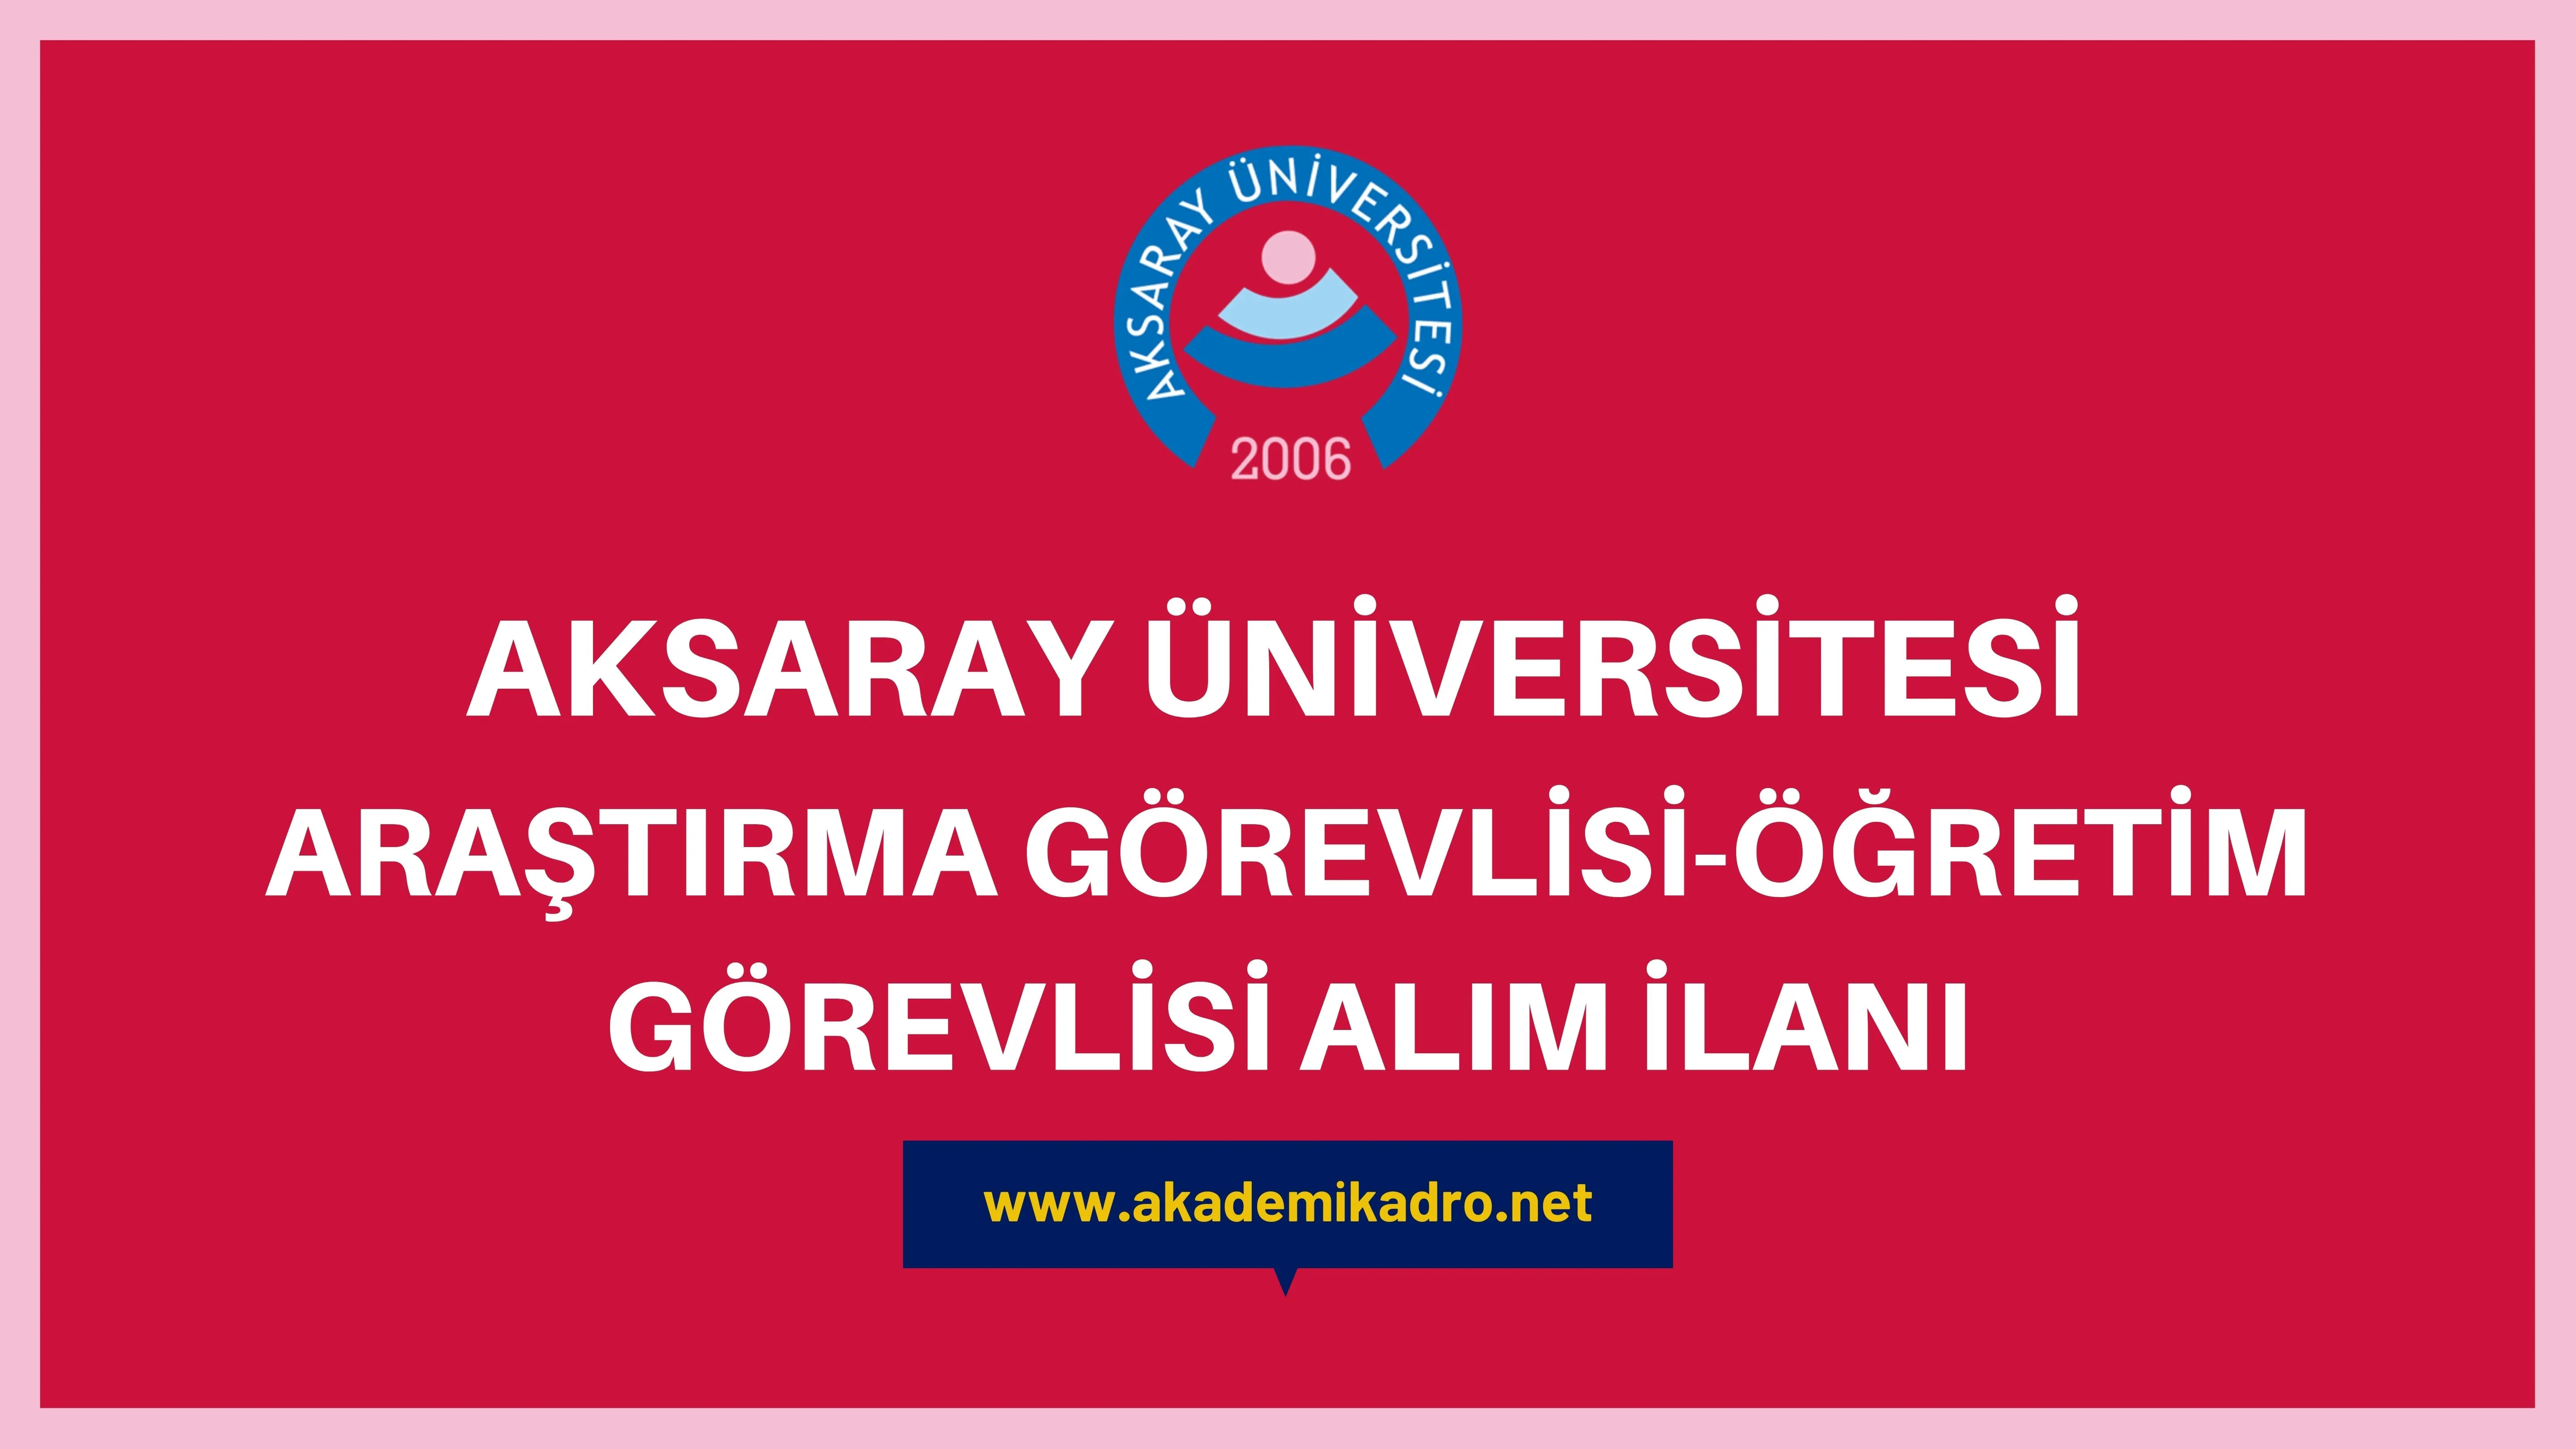 Aksaray Üniversitesi 5 Öğretim Görevlisi ve 2 Araştırma görevlisi alacaktır. Son başvuru tarihi 25 Kasım 2022